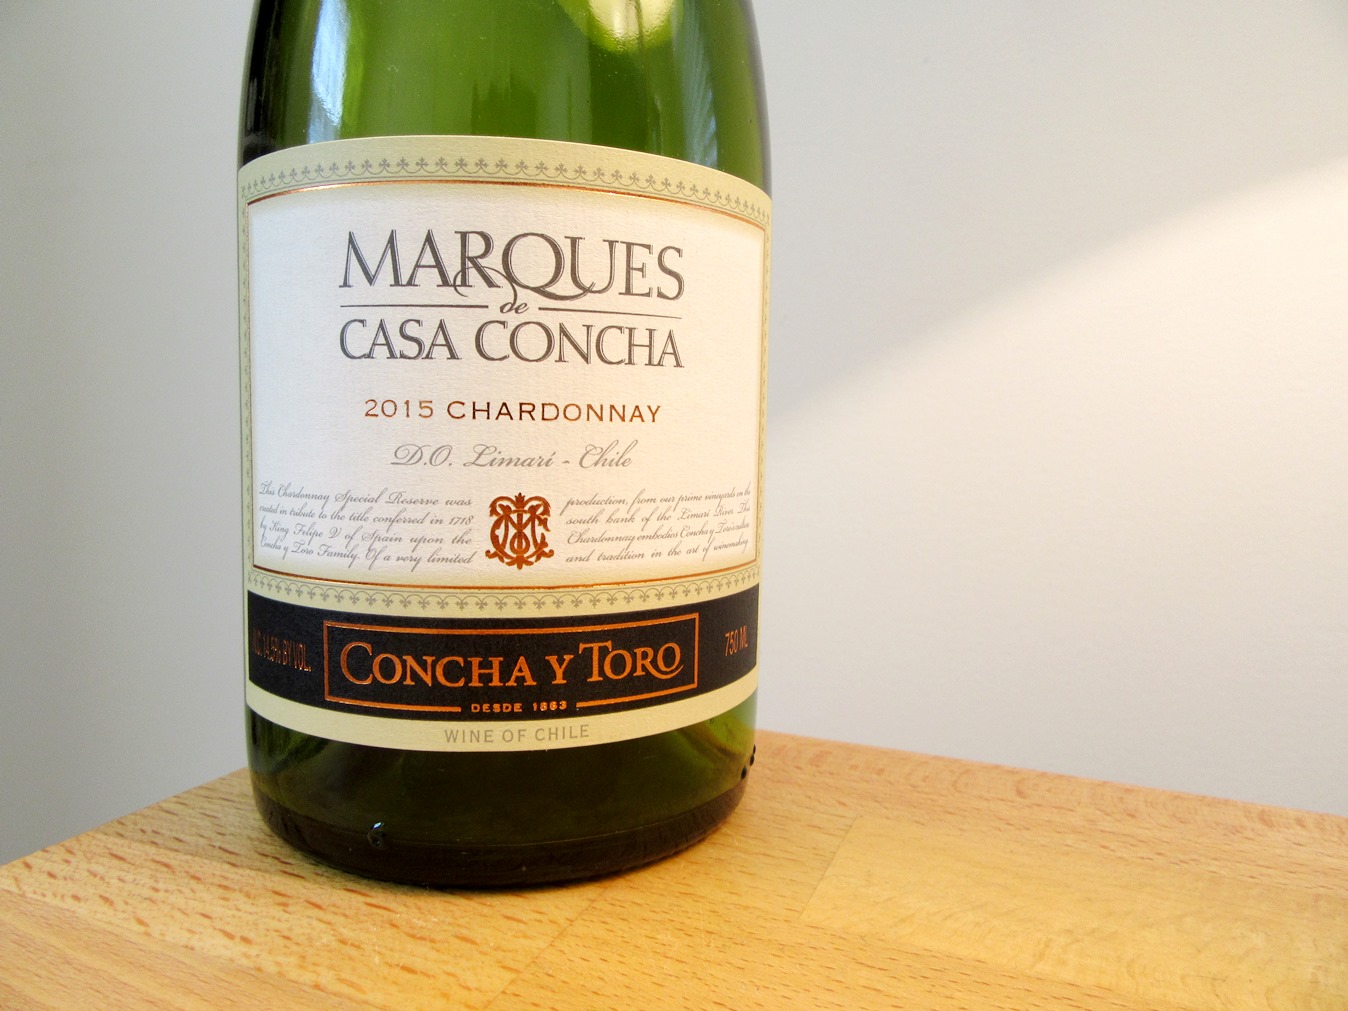 Concha Y Toro, Marques de Casa Concha, Chardonnay 2015, Limarí Valley, Chile, Wine Casual